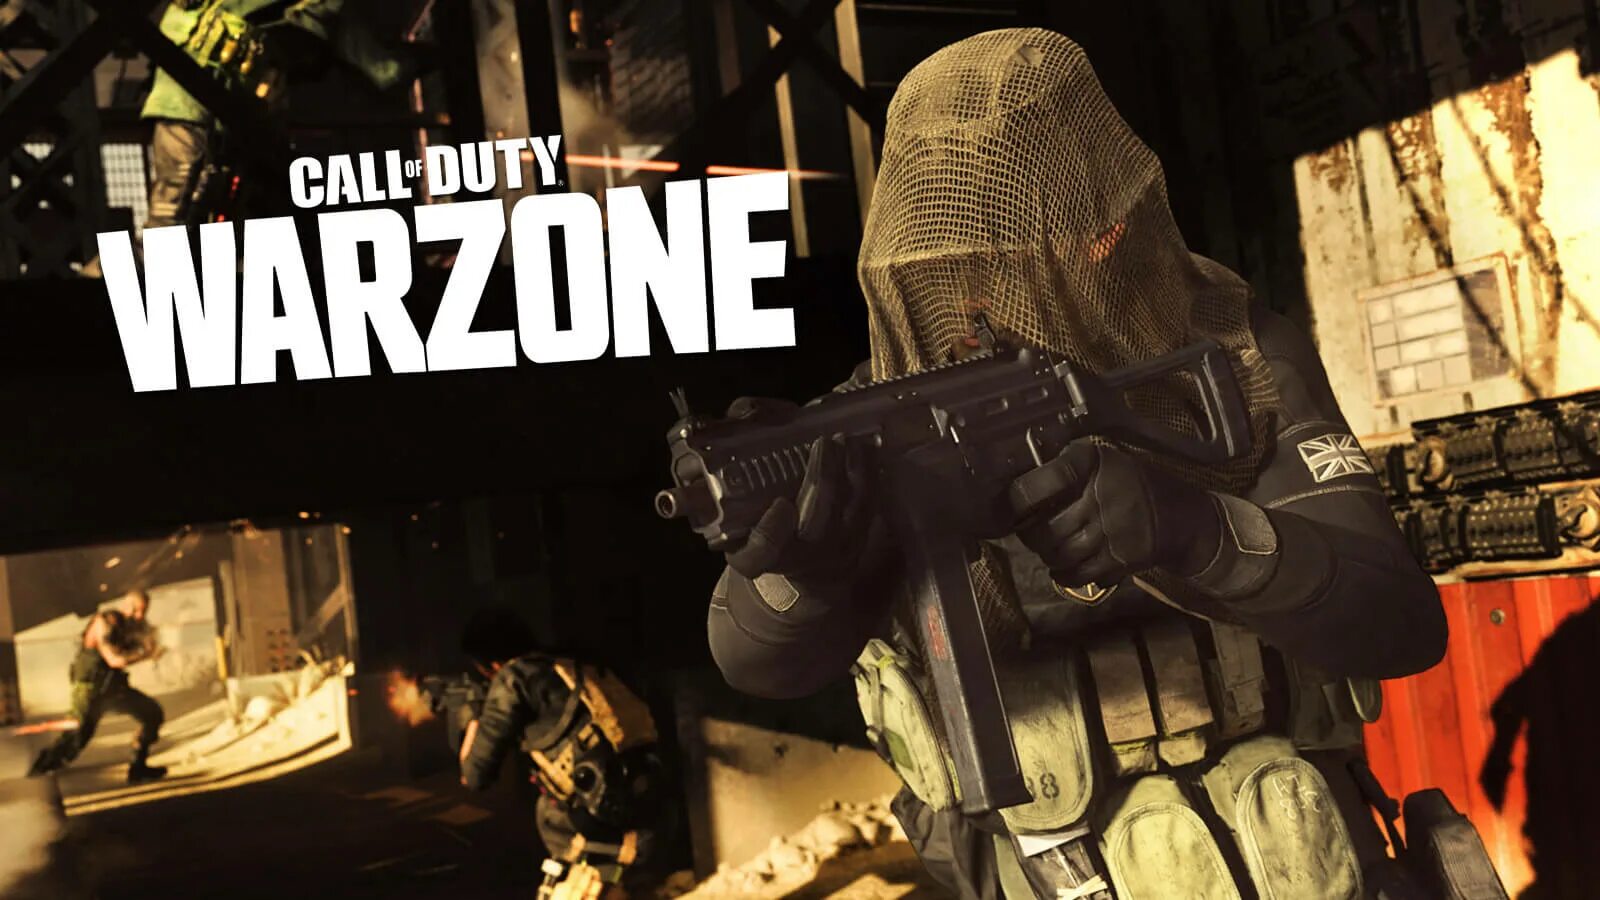 Call of Duty Warzone. Call of Duty Warzone 2. Call of Duty Warzone 2 стрим. Варзоне Call of Duty. Call of duty warzone play